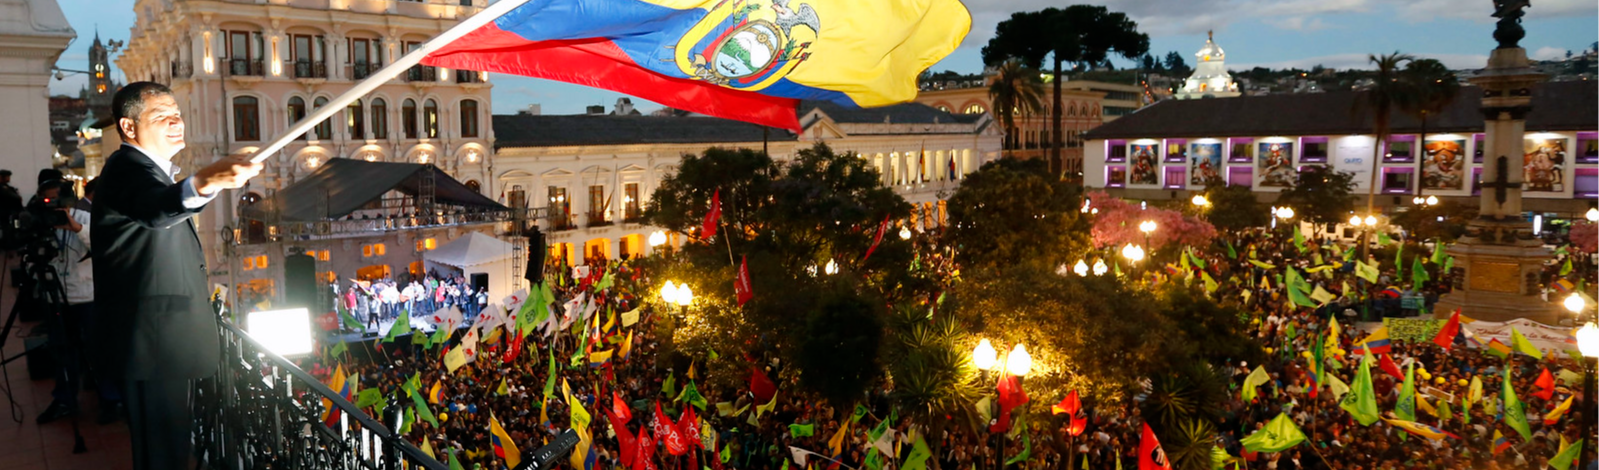 ComunicaSul arrecada fundos para cobrir eleições no Equador; faça parte dessa história